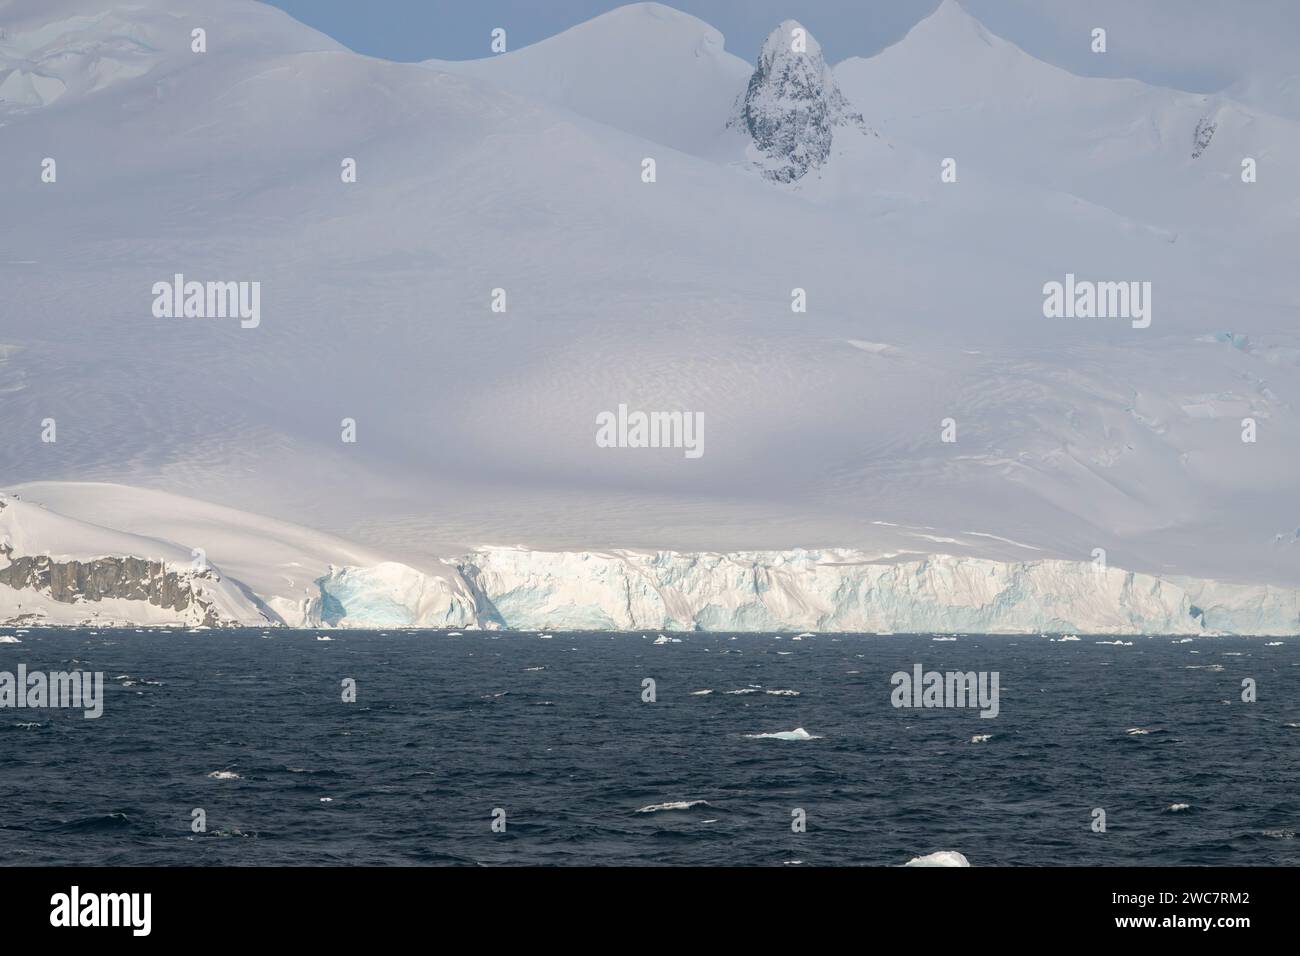 Brialmont Cove, antártida En un día nublado en primavera, hielo y la costa cubierta de nieve con arcos de hielo y cuevas nubes de la antártida claro, cielo azul Foto de stock